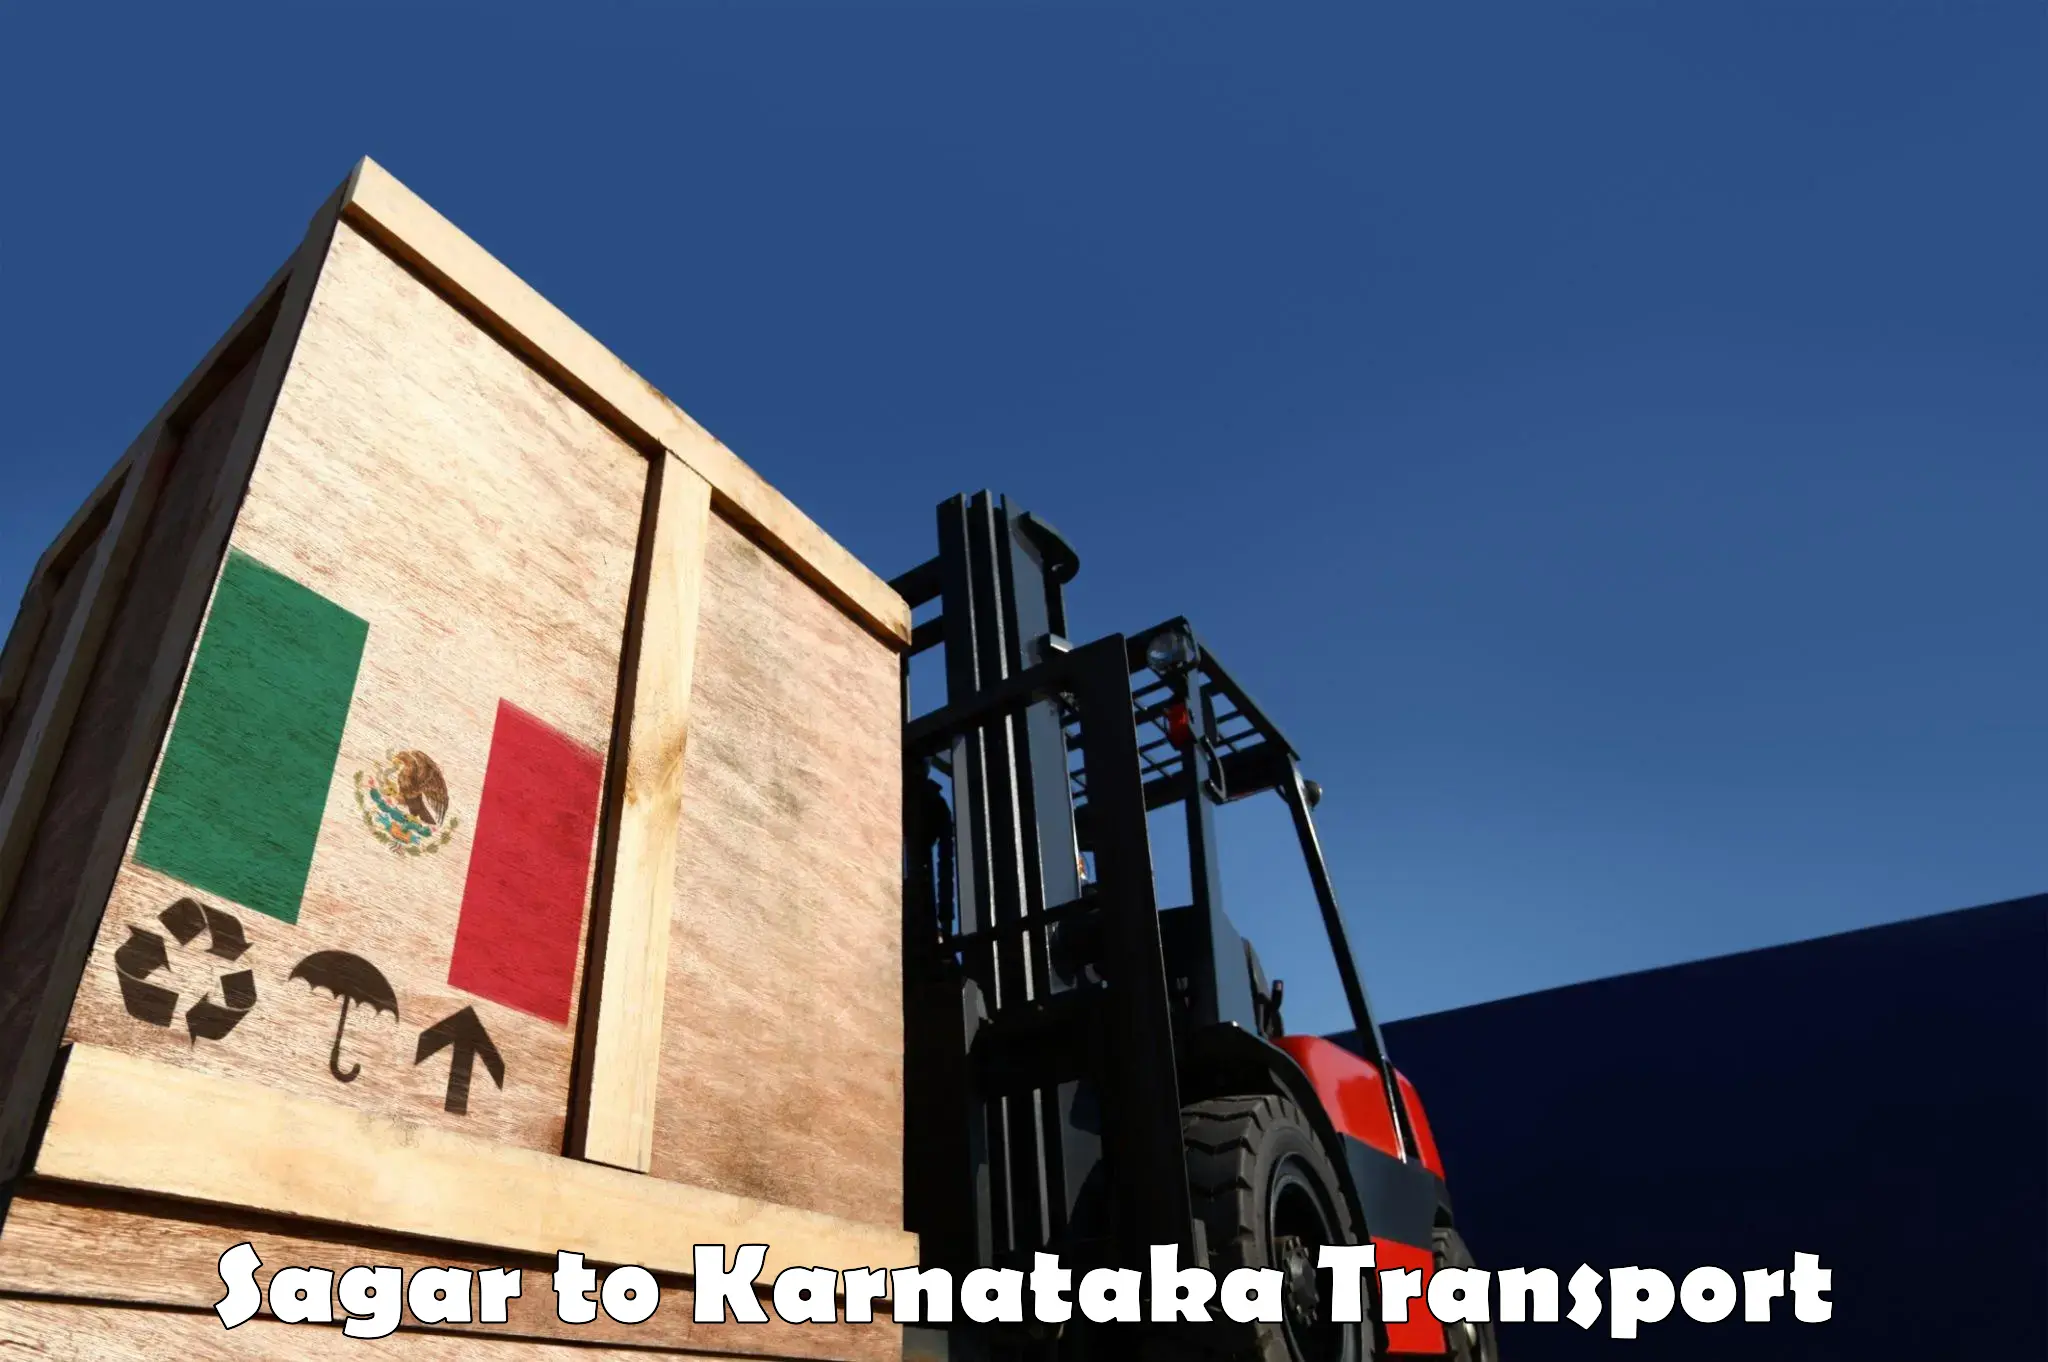 Container transport service Sagar to Ramanagara